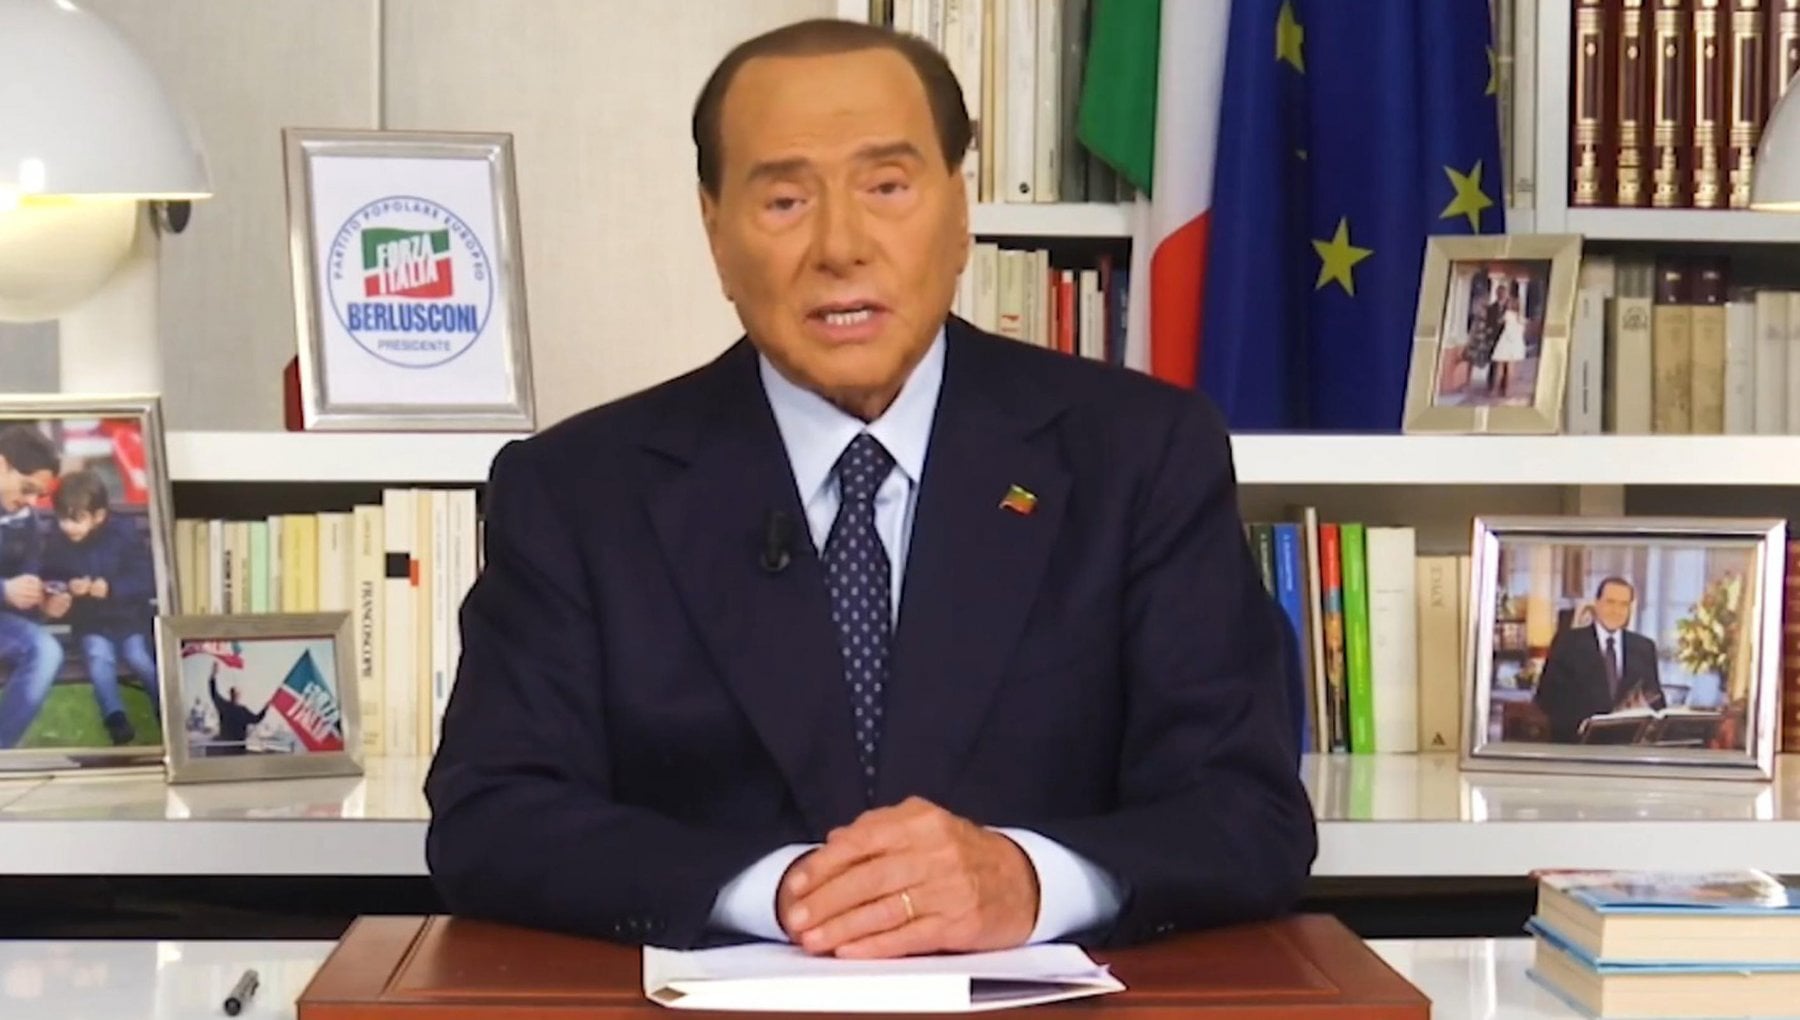 Berlusconi rilancia le bugie già sbugiardate: "Votatemi per un nuovo miracolo italiano"